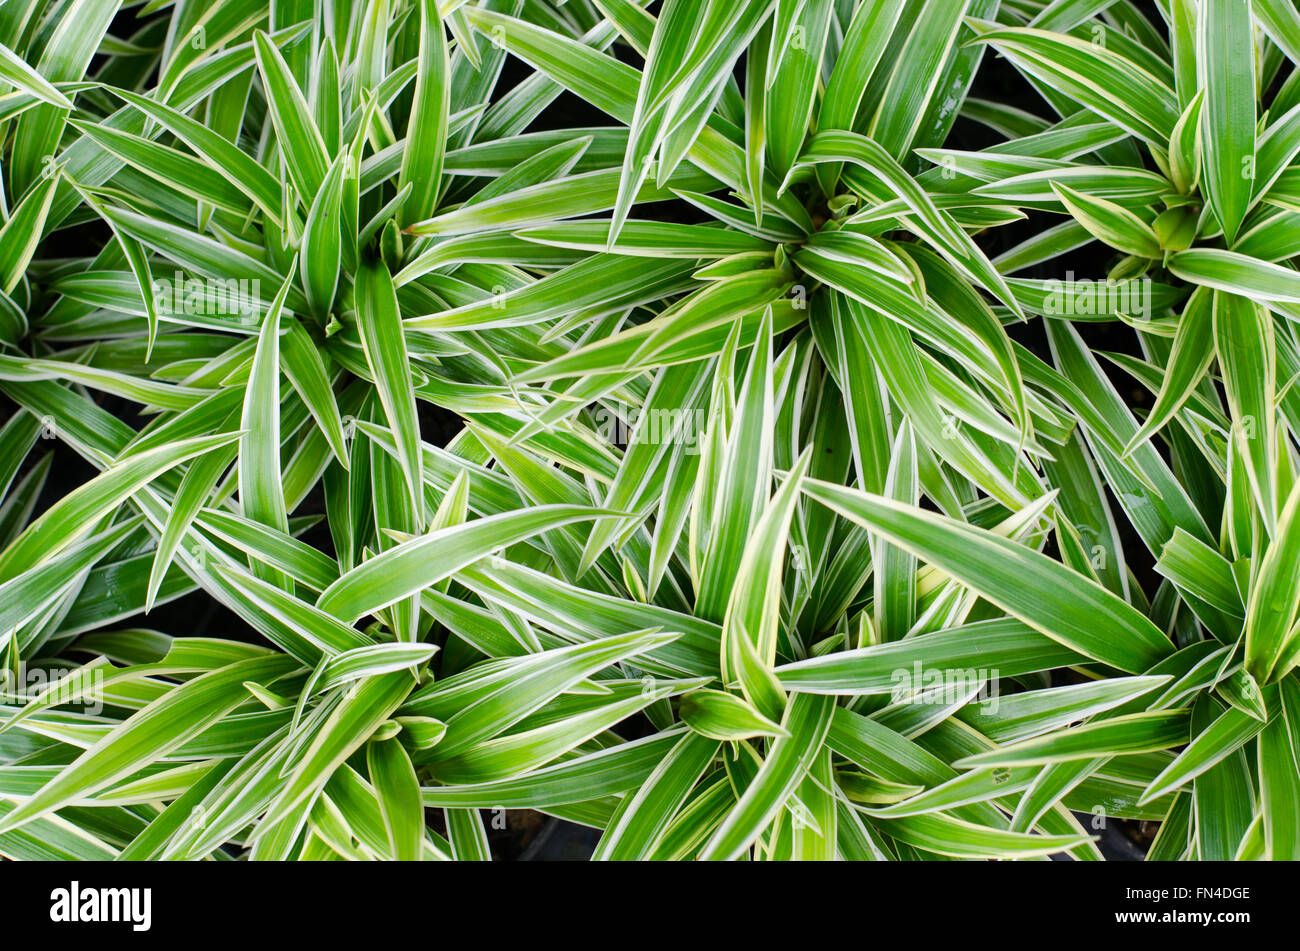 Chlorophytum bichetii (Karrer) Backer. Stock Photo